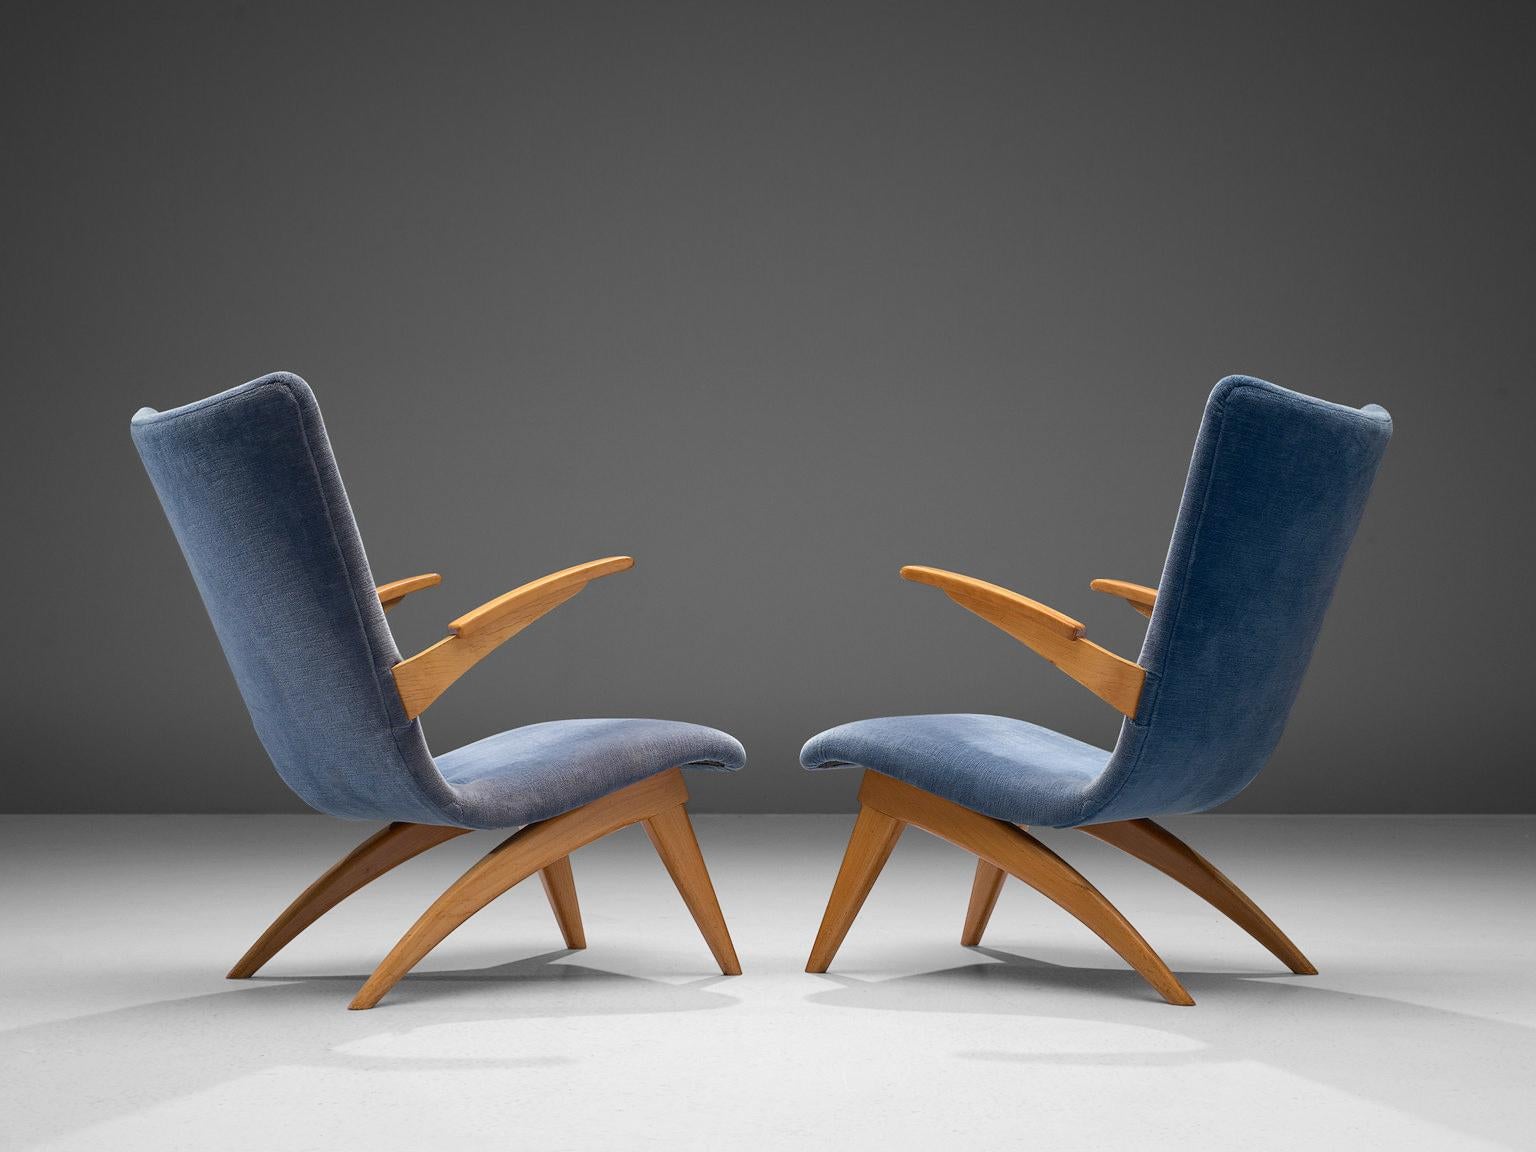 G. Van Os für Van Os Culemborg, Paar Sessel, Buche und Stoff, Niederlande, 1950er Jahre.

Dieses Sesselpaar ist ein Entwurf des niederländischen Designers G. Van Os aus den 1950er Jahren. Diese Loungesessel aus Buche und blauem Stoff haben eine